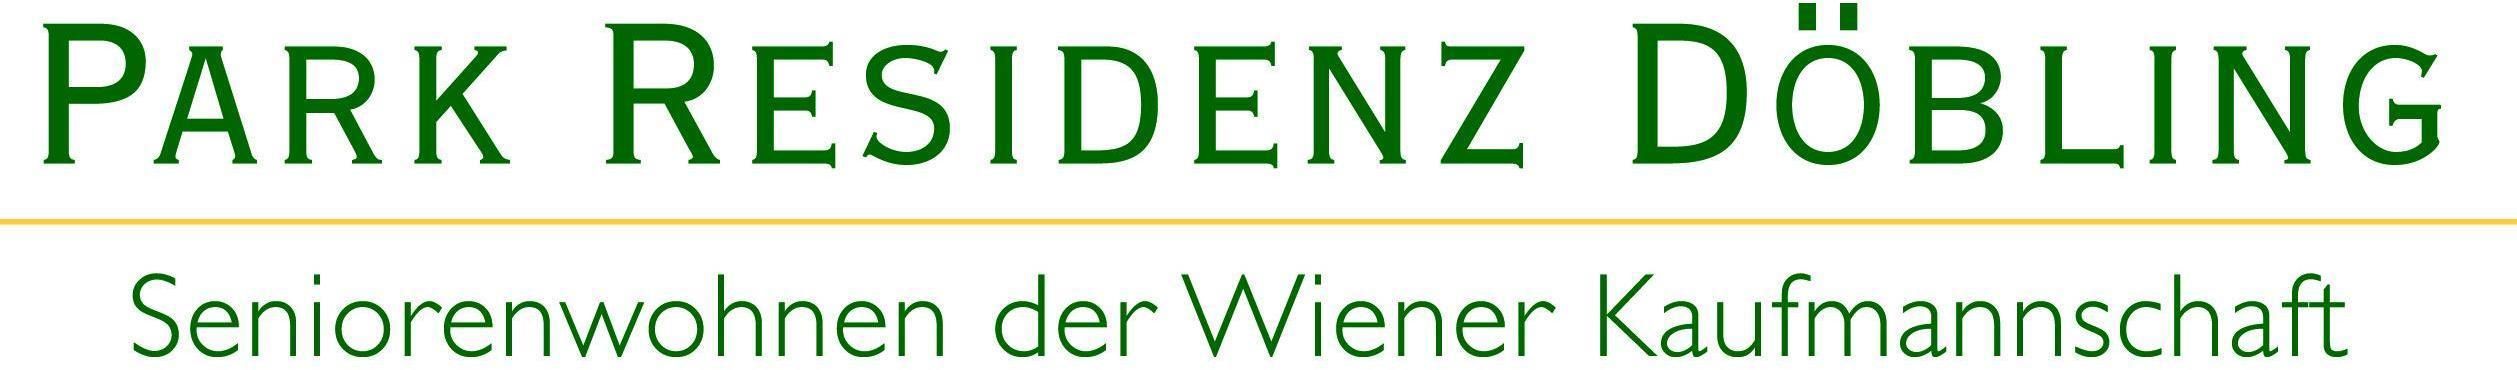 Logo PARK RESIDENZ DÖBLING Seniorenwohnen der Wiener Kaufmannschaft